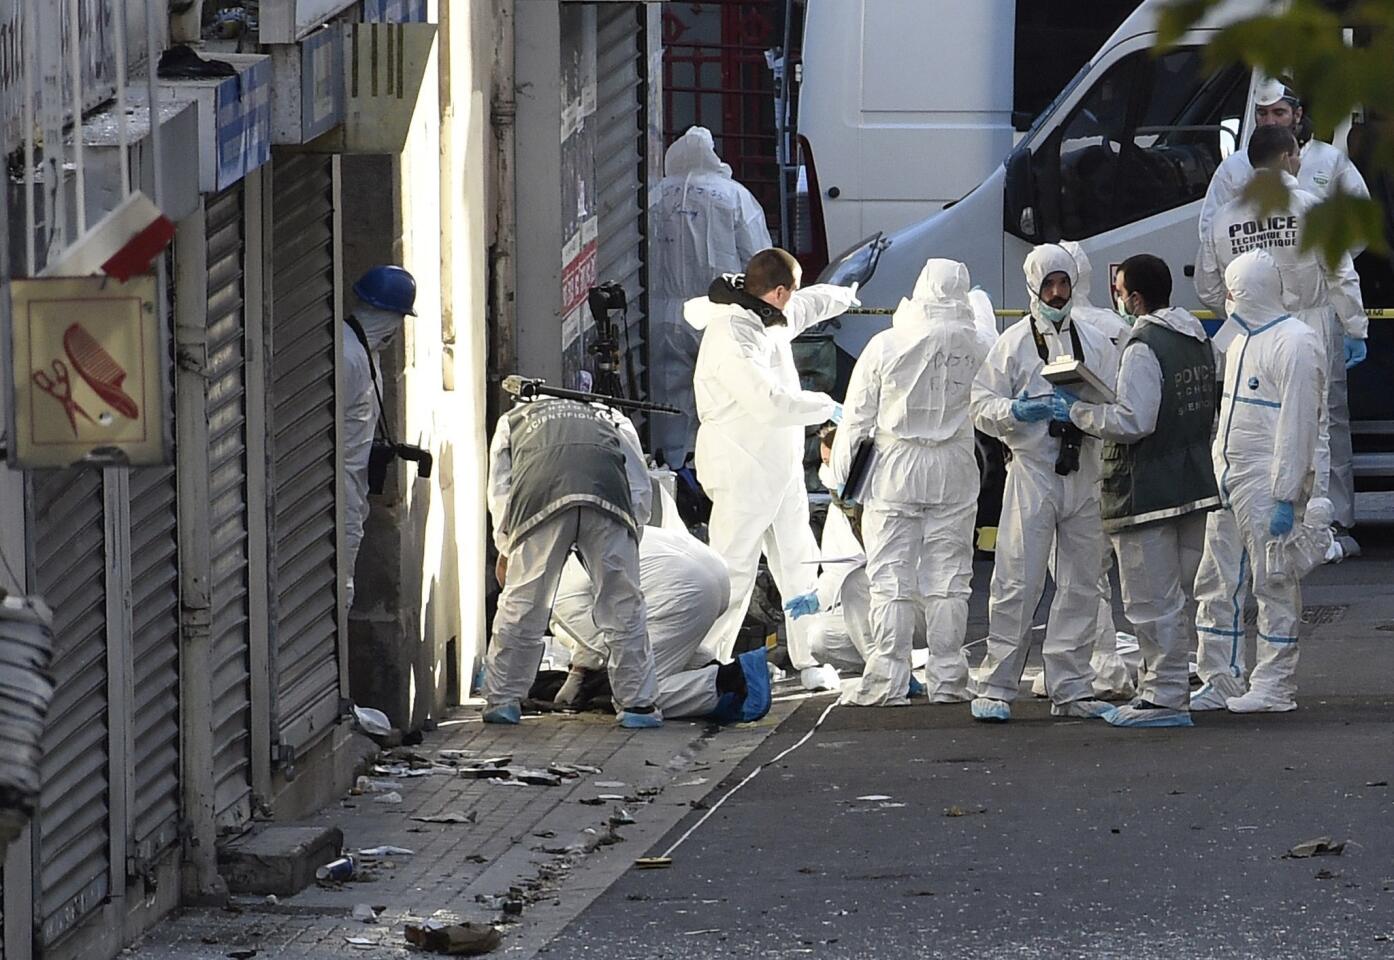 Raid in Saint-Denis